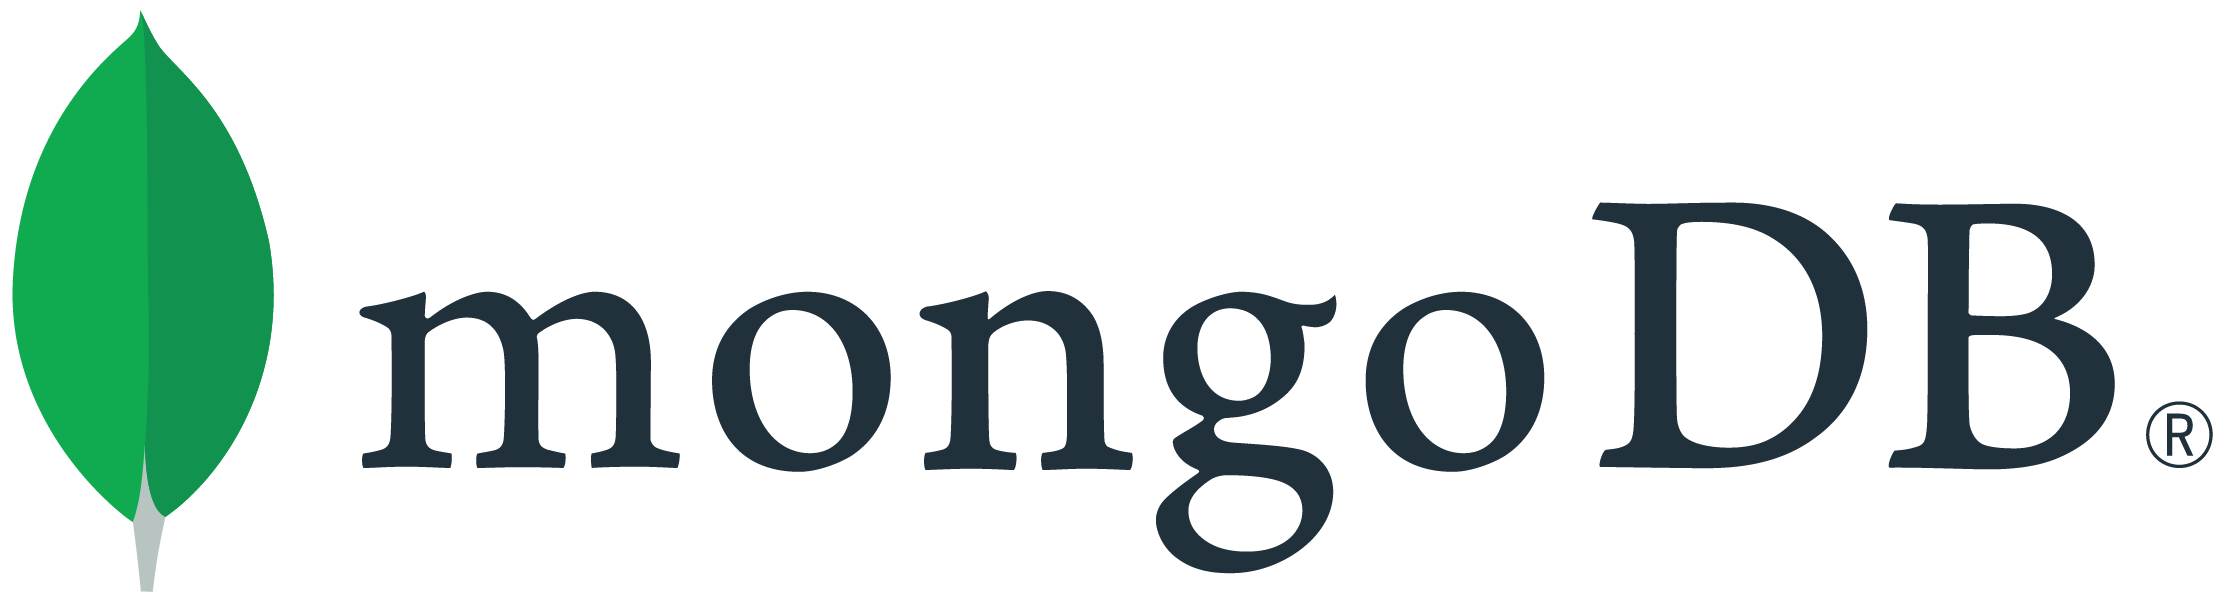 Sponsor logo - MongoDB